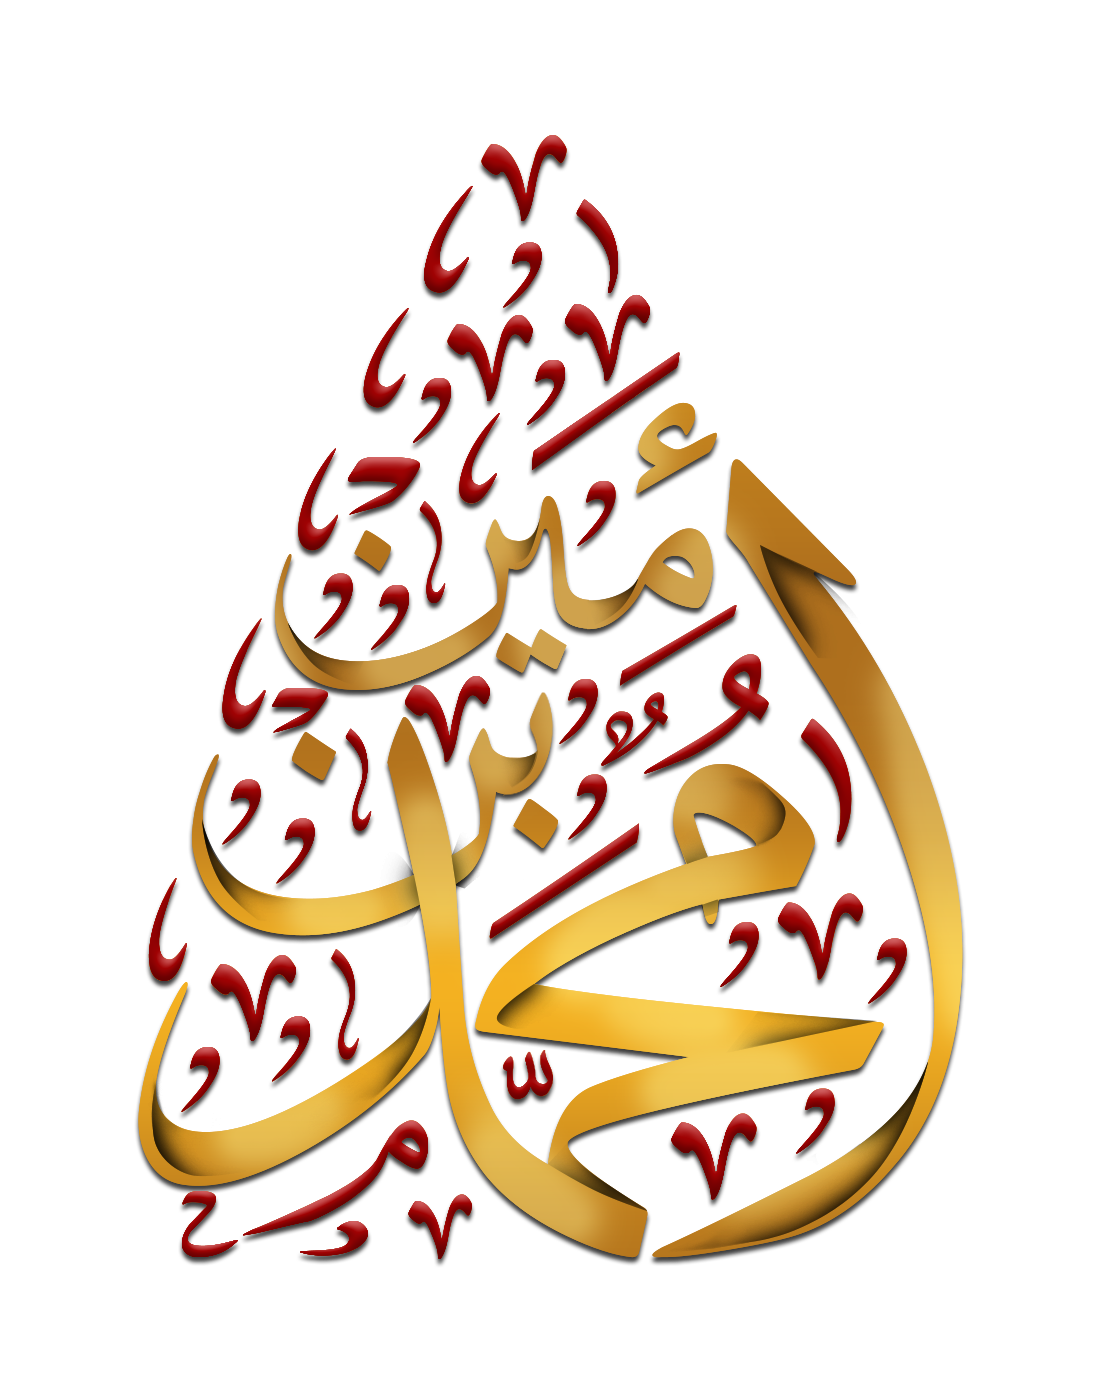 تصميم شعار لوجو مخطوطة محمد بن أمين بخلفية شفافة وتشكيل أحمر